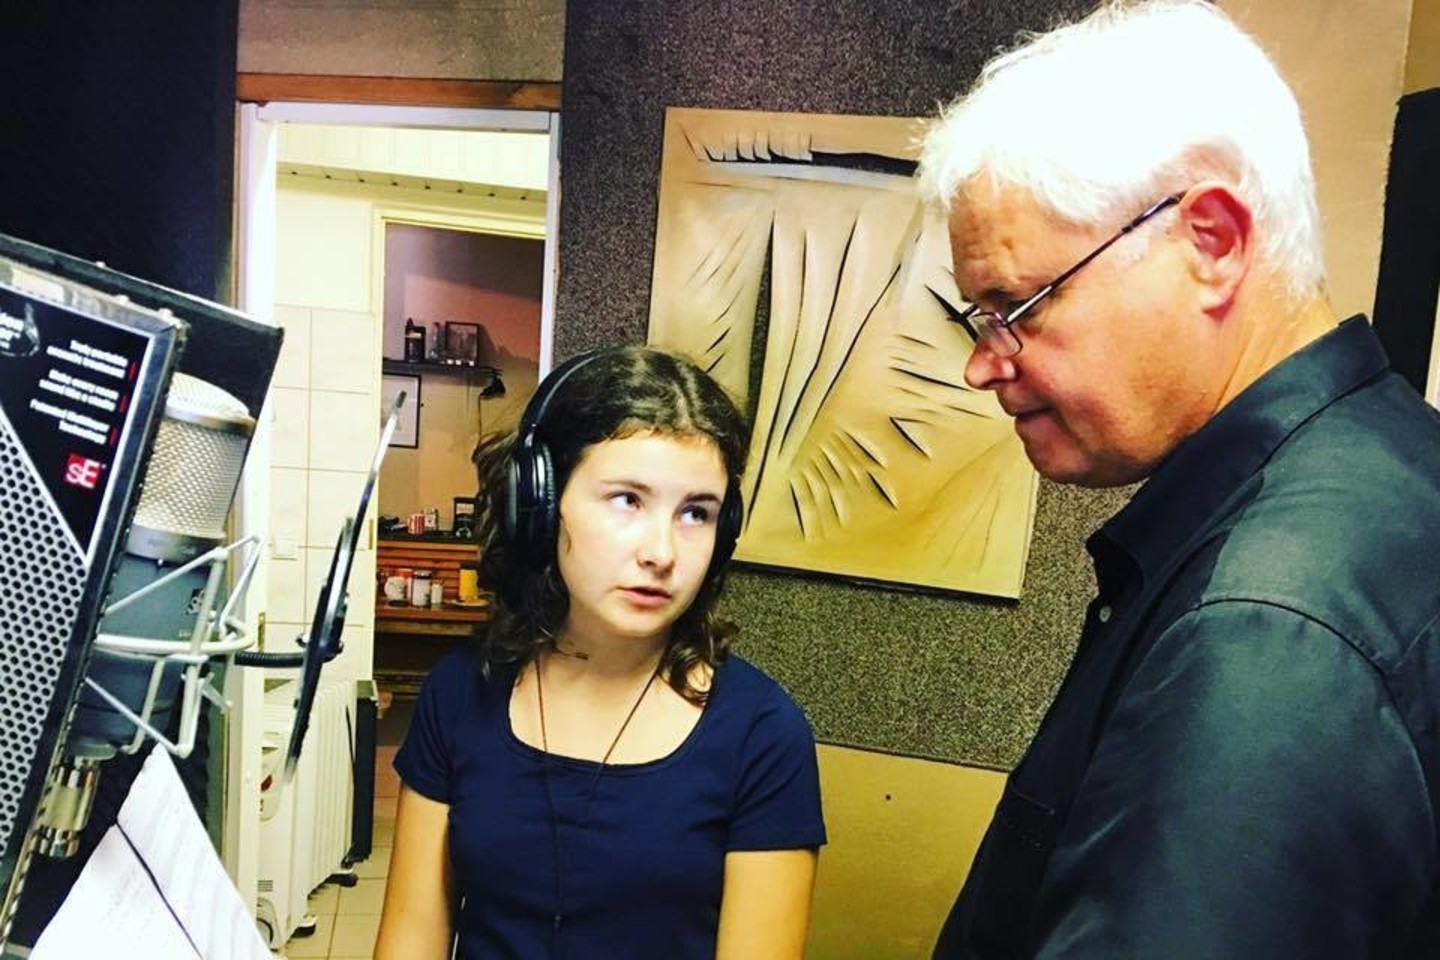 Klaipėdos meras su dukra įrašė savo miestui skirtą dainą.